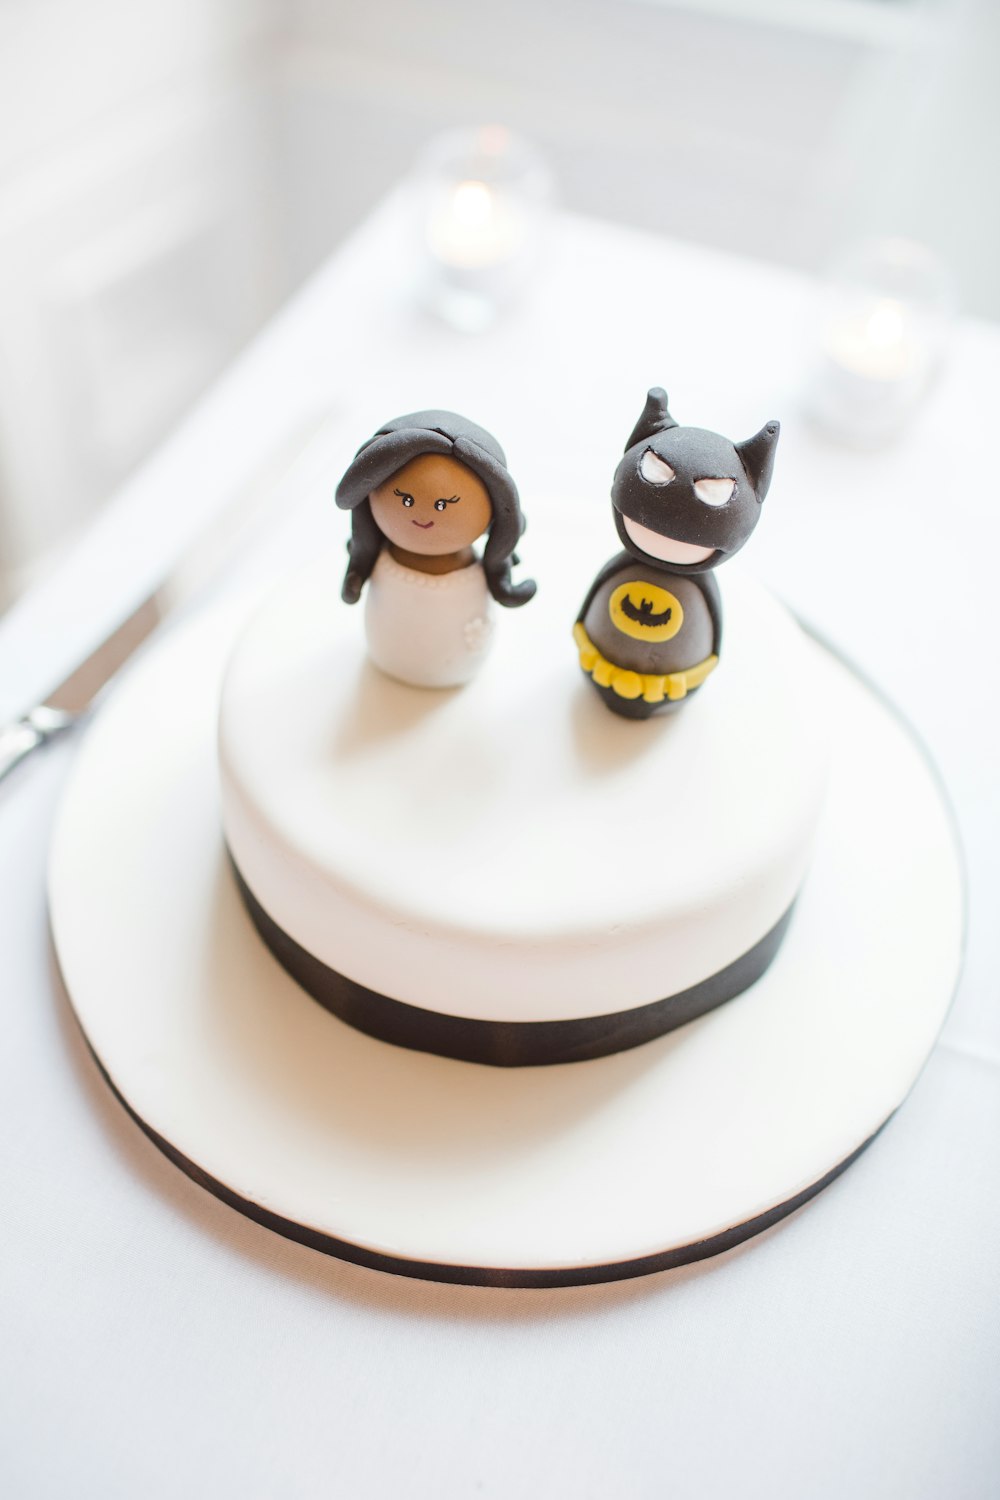 Batman cake topping photo – Free Wedding cake Image on Unsplash